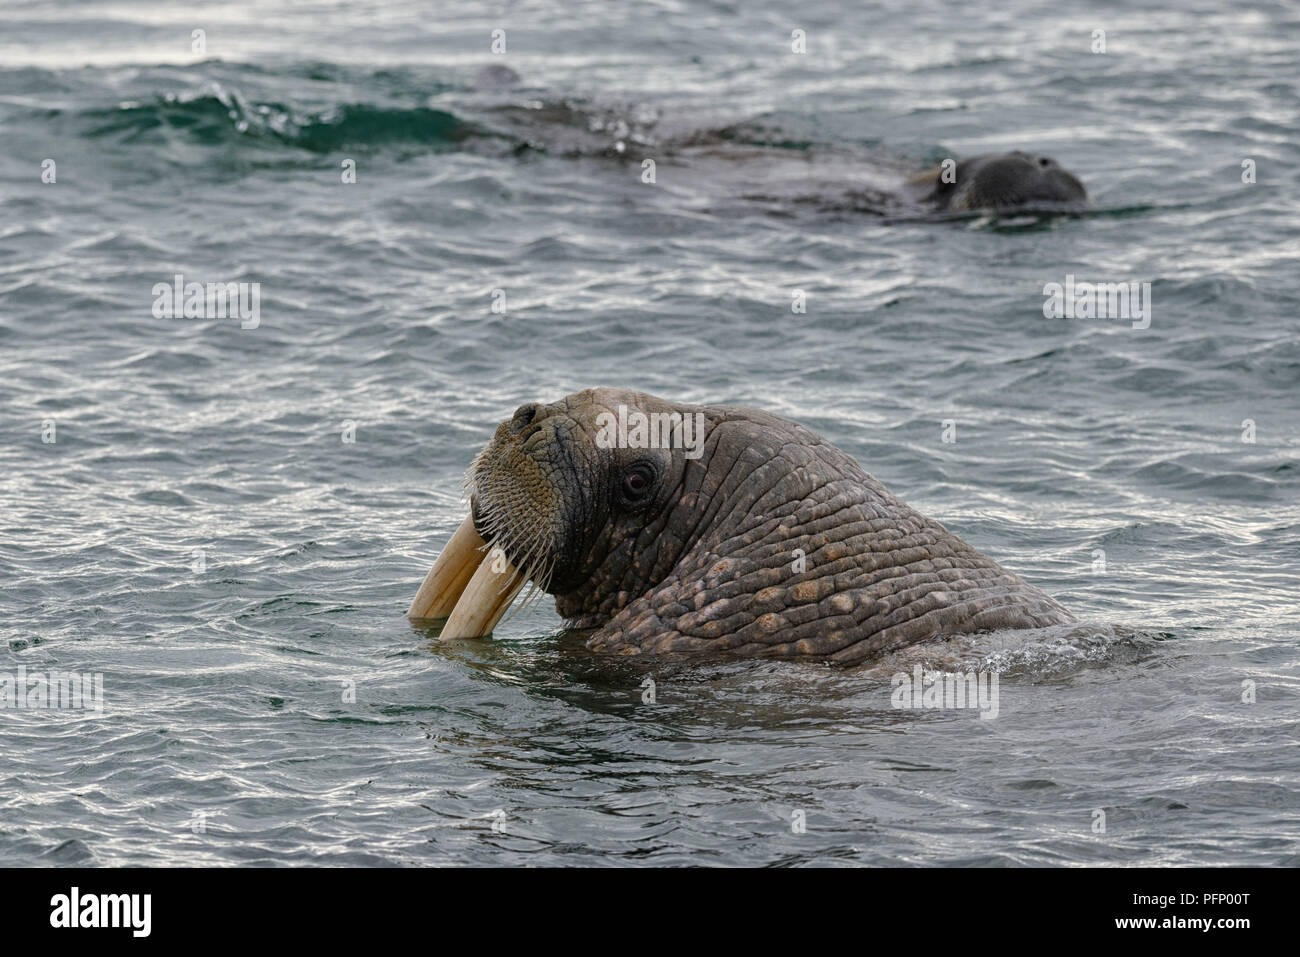 Walrus (Odobenus rosmarus), Torellnesfjellet, Nordaustlandet, Svalbard, Norway. Walrus in sea looking back Stock Photo